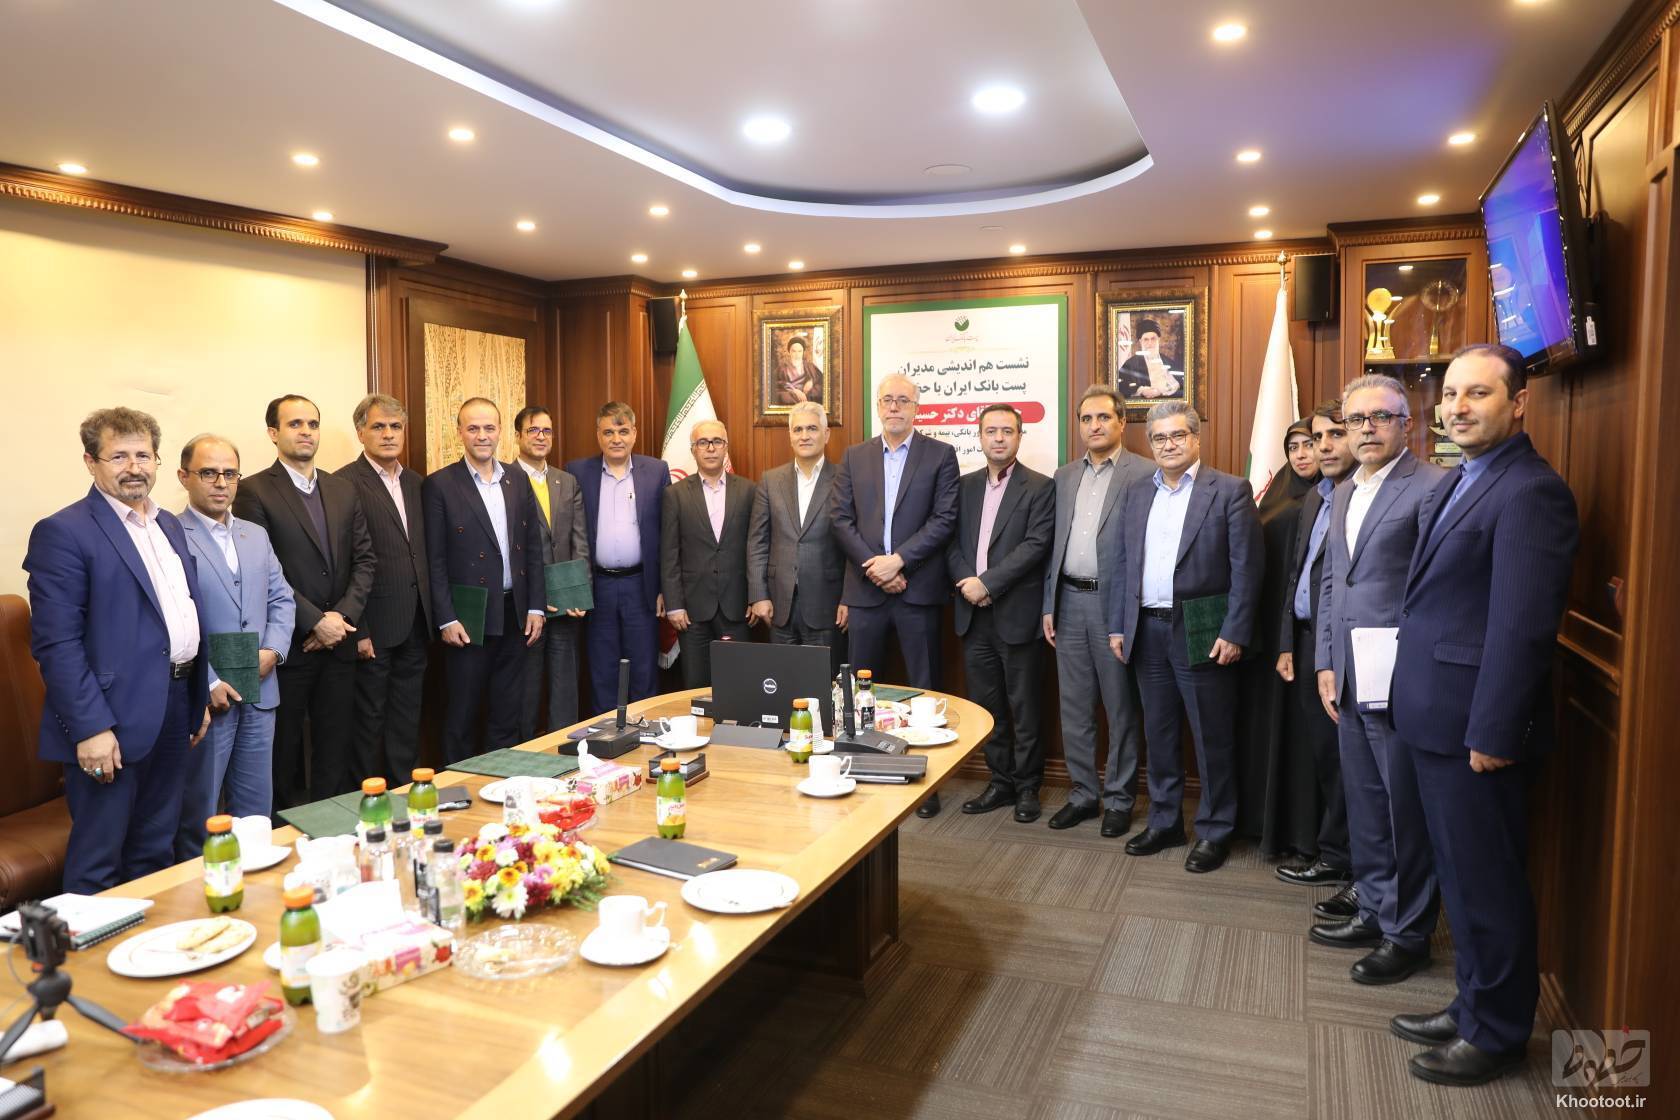 اساسنامه جدید پست بانک ایران در شورای پول و اعتبار به تصویب رسید